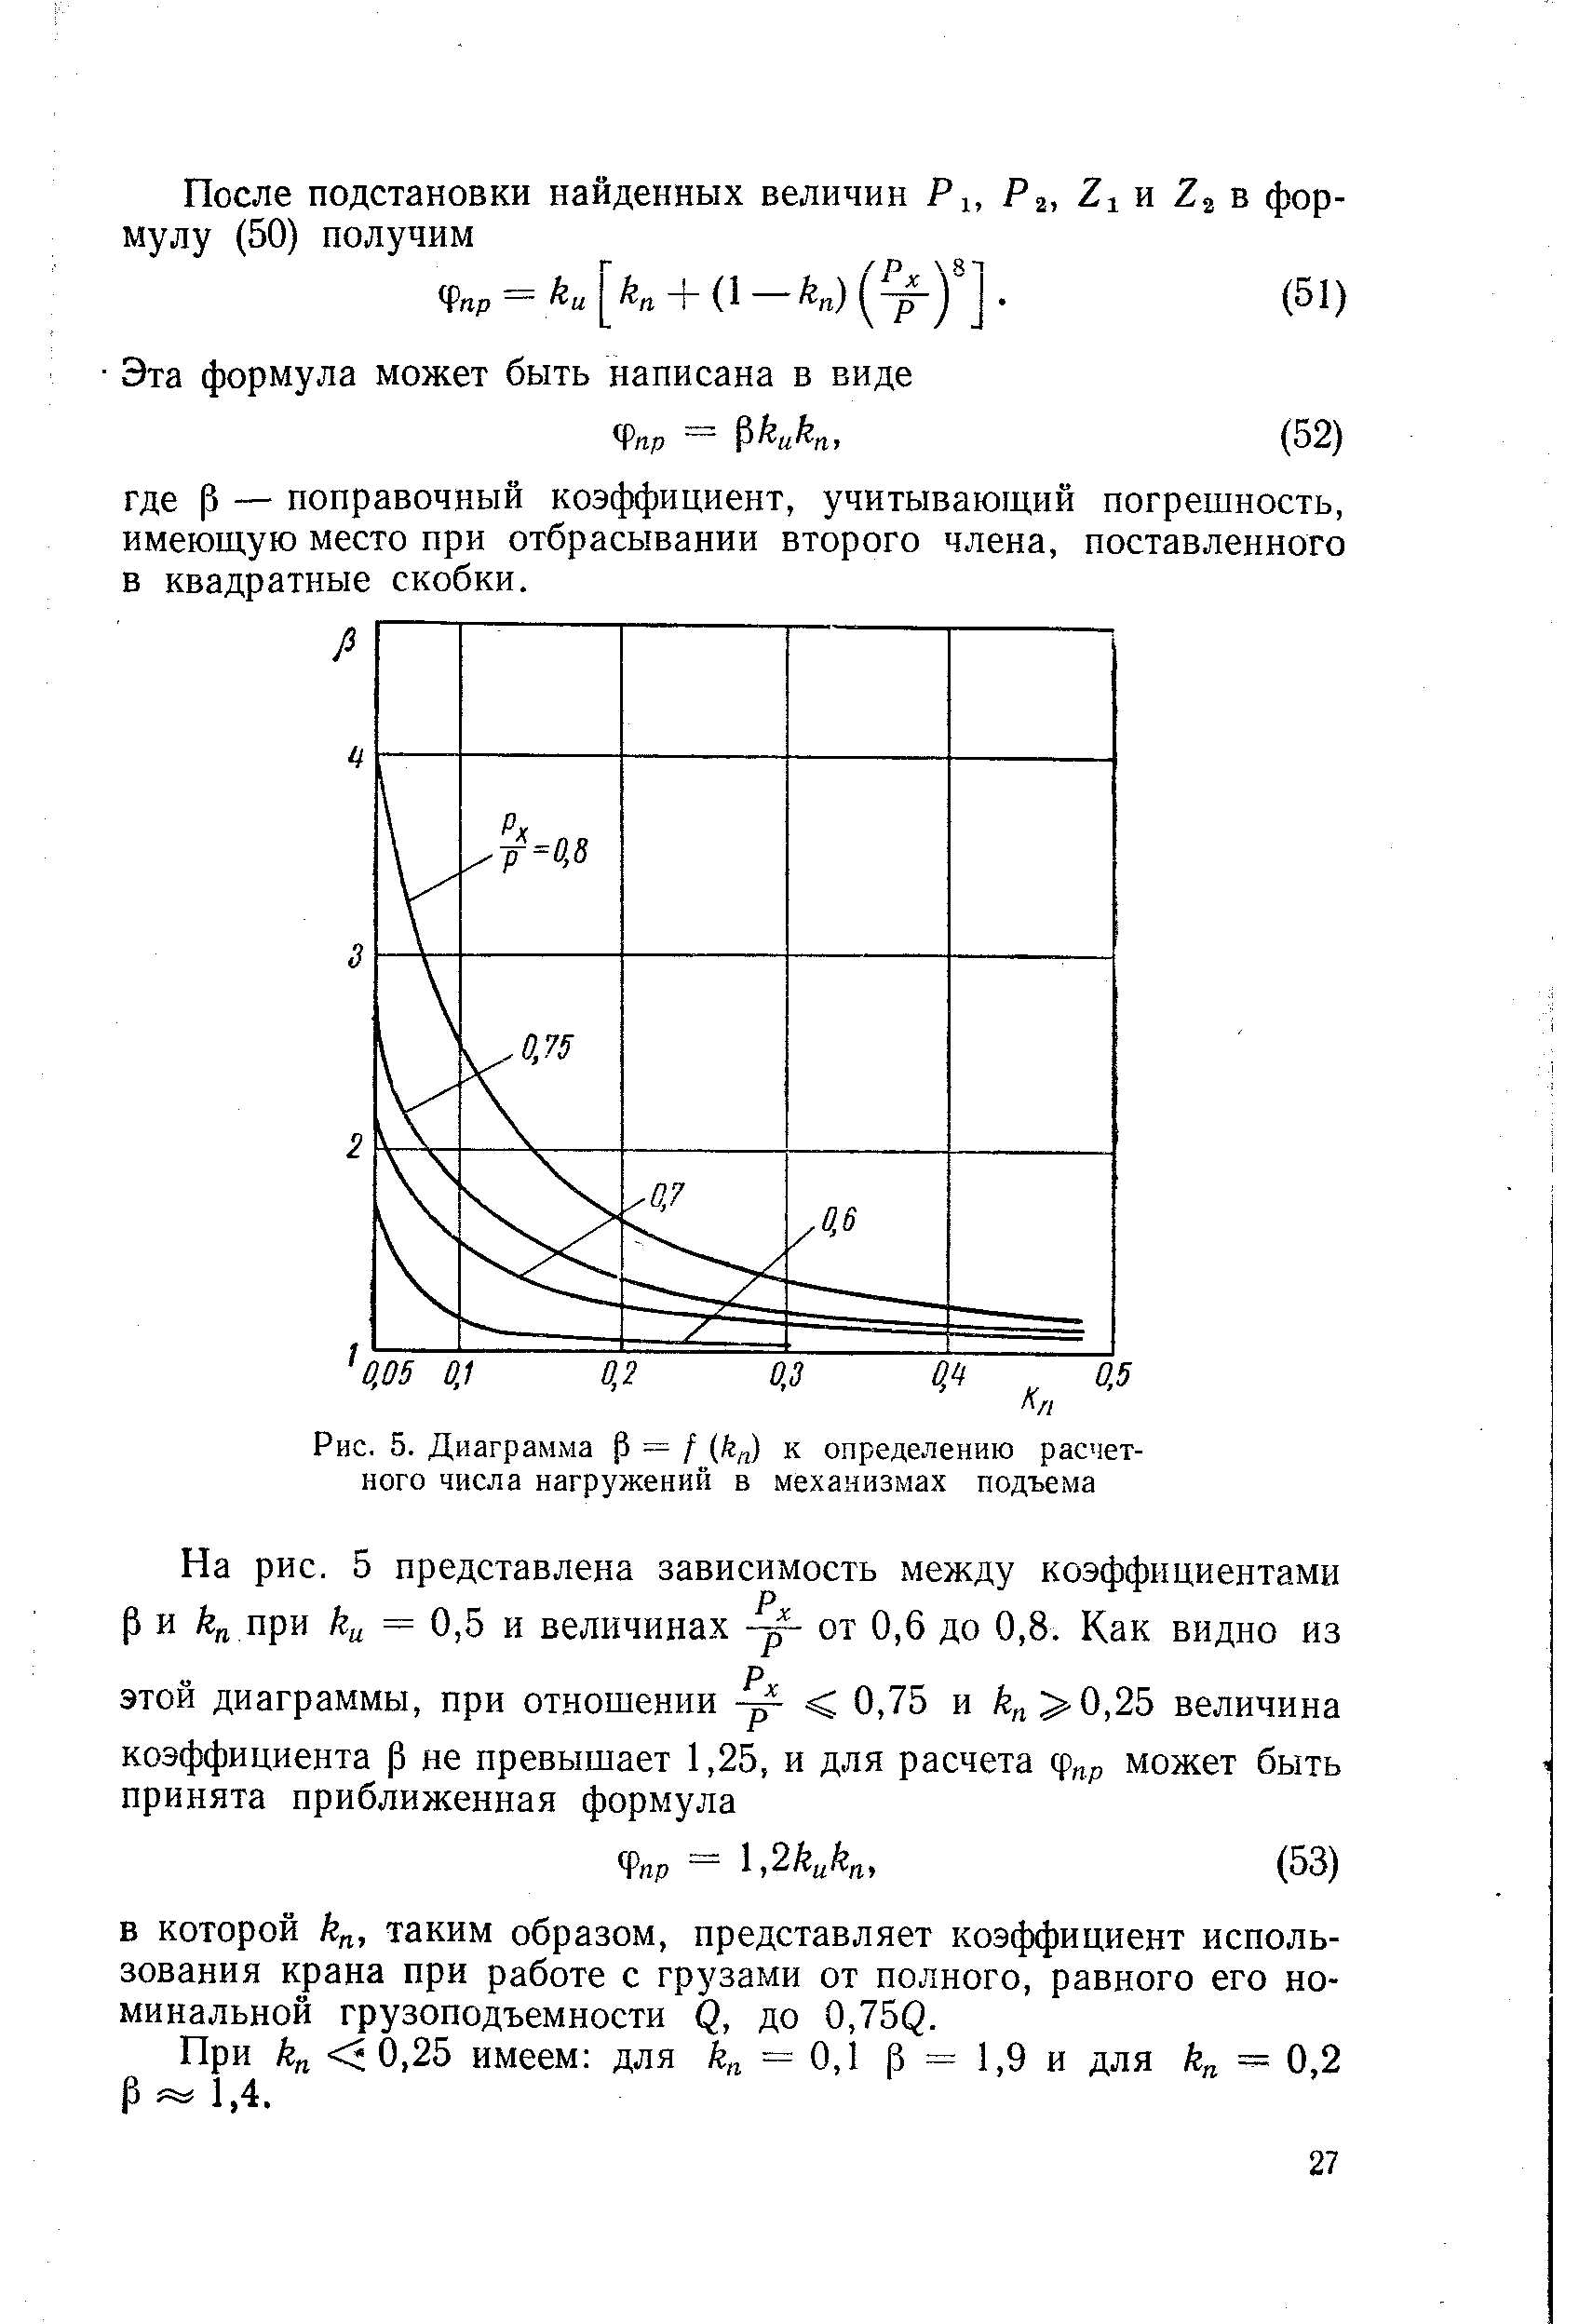 Рис. 5. Диаграмма Р = / (ft ) к определению расчетного числа нагружений в механизмах подъема
